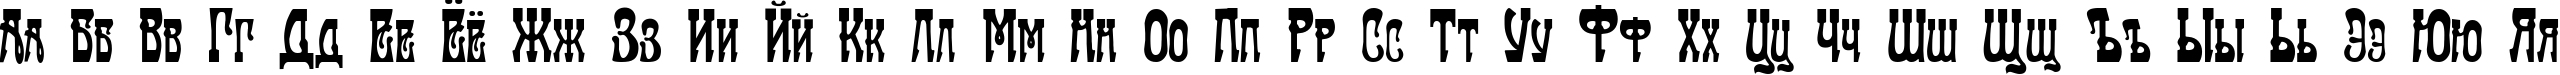 Пример написания русского алфавита шрифтом Traktir-Modern